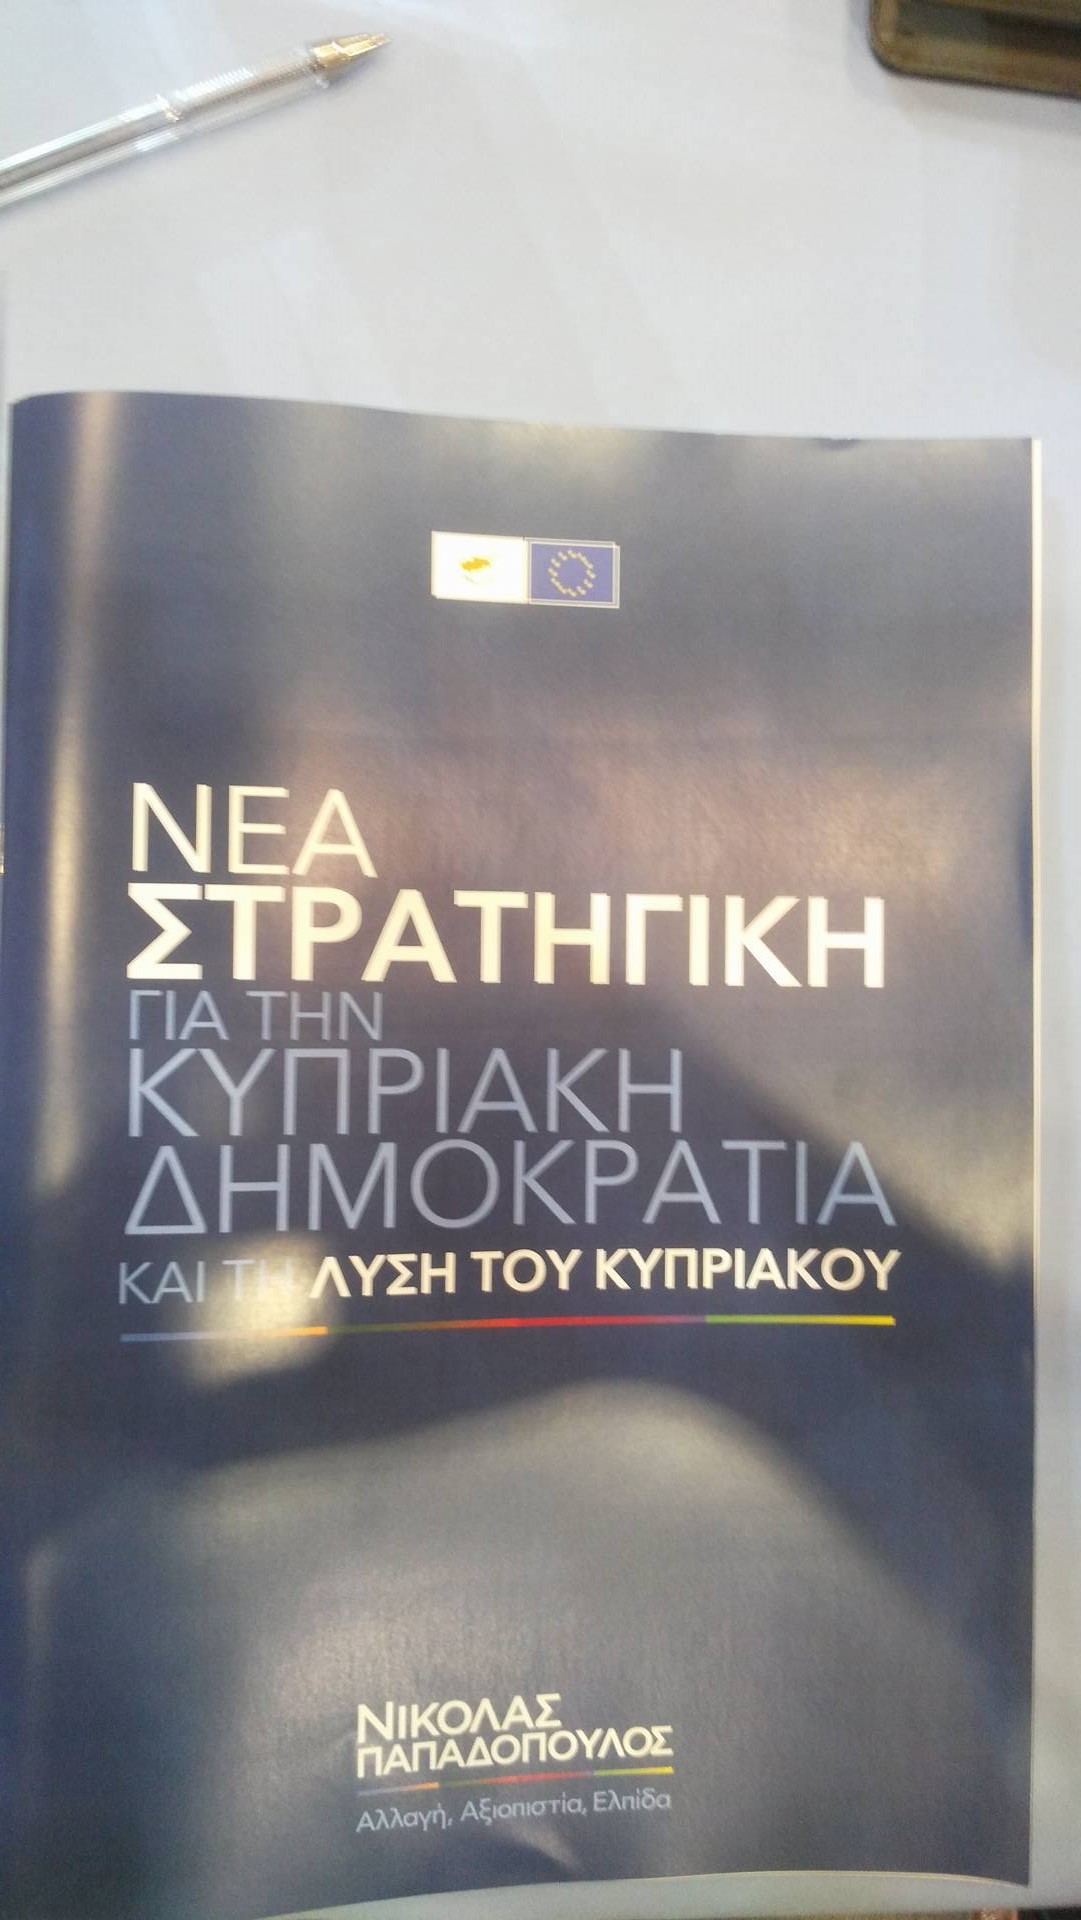 Ν. Παπαδόπουλος για πολιτικούς αντιπάλους: «Την επόμενη φορά θα δώσουν εγγυήσεις, επεμβατικά δικαιώματα και στρατό» VIDEO & ΦΩΤΟΓΡΑΦΙΕΣ